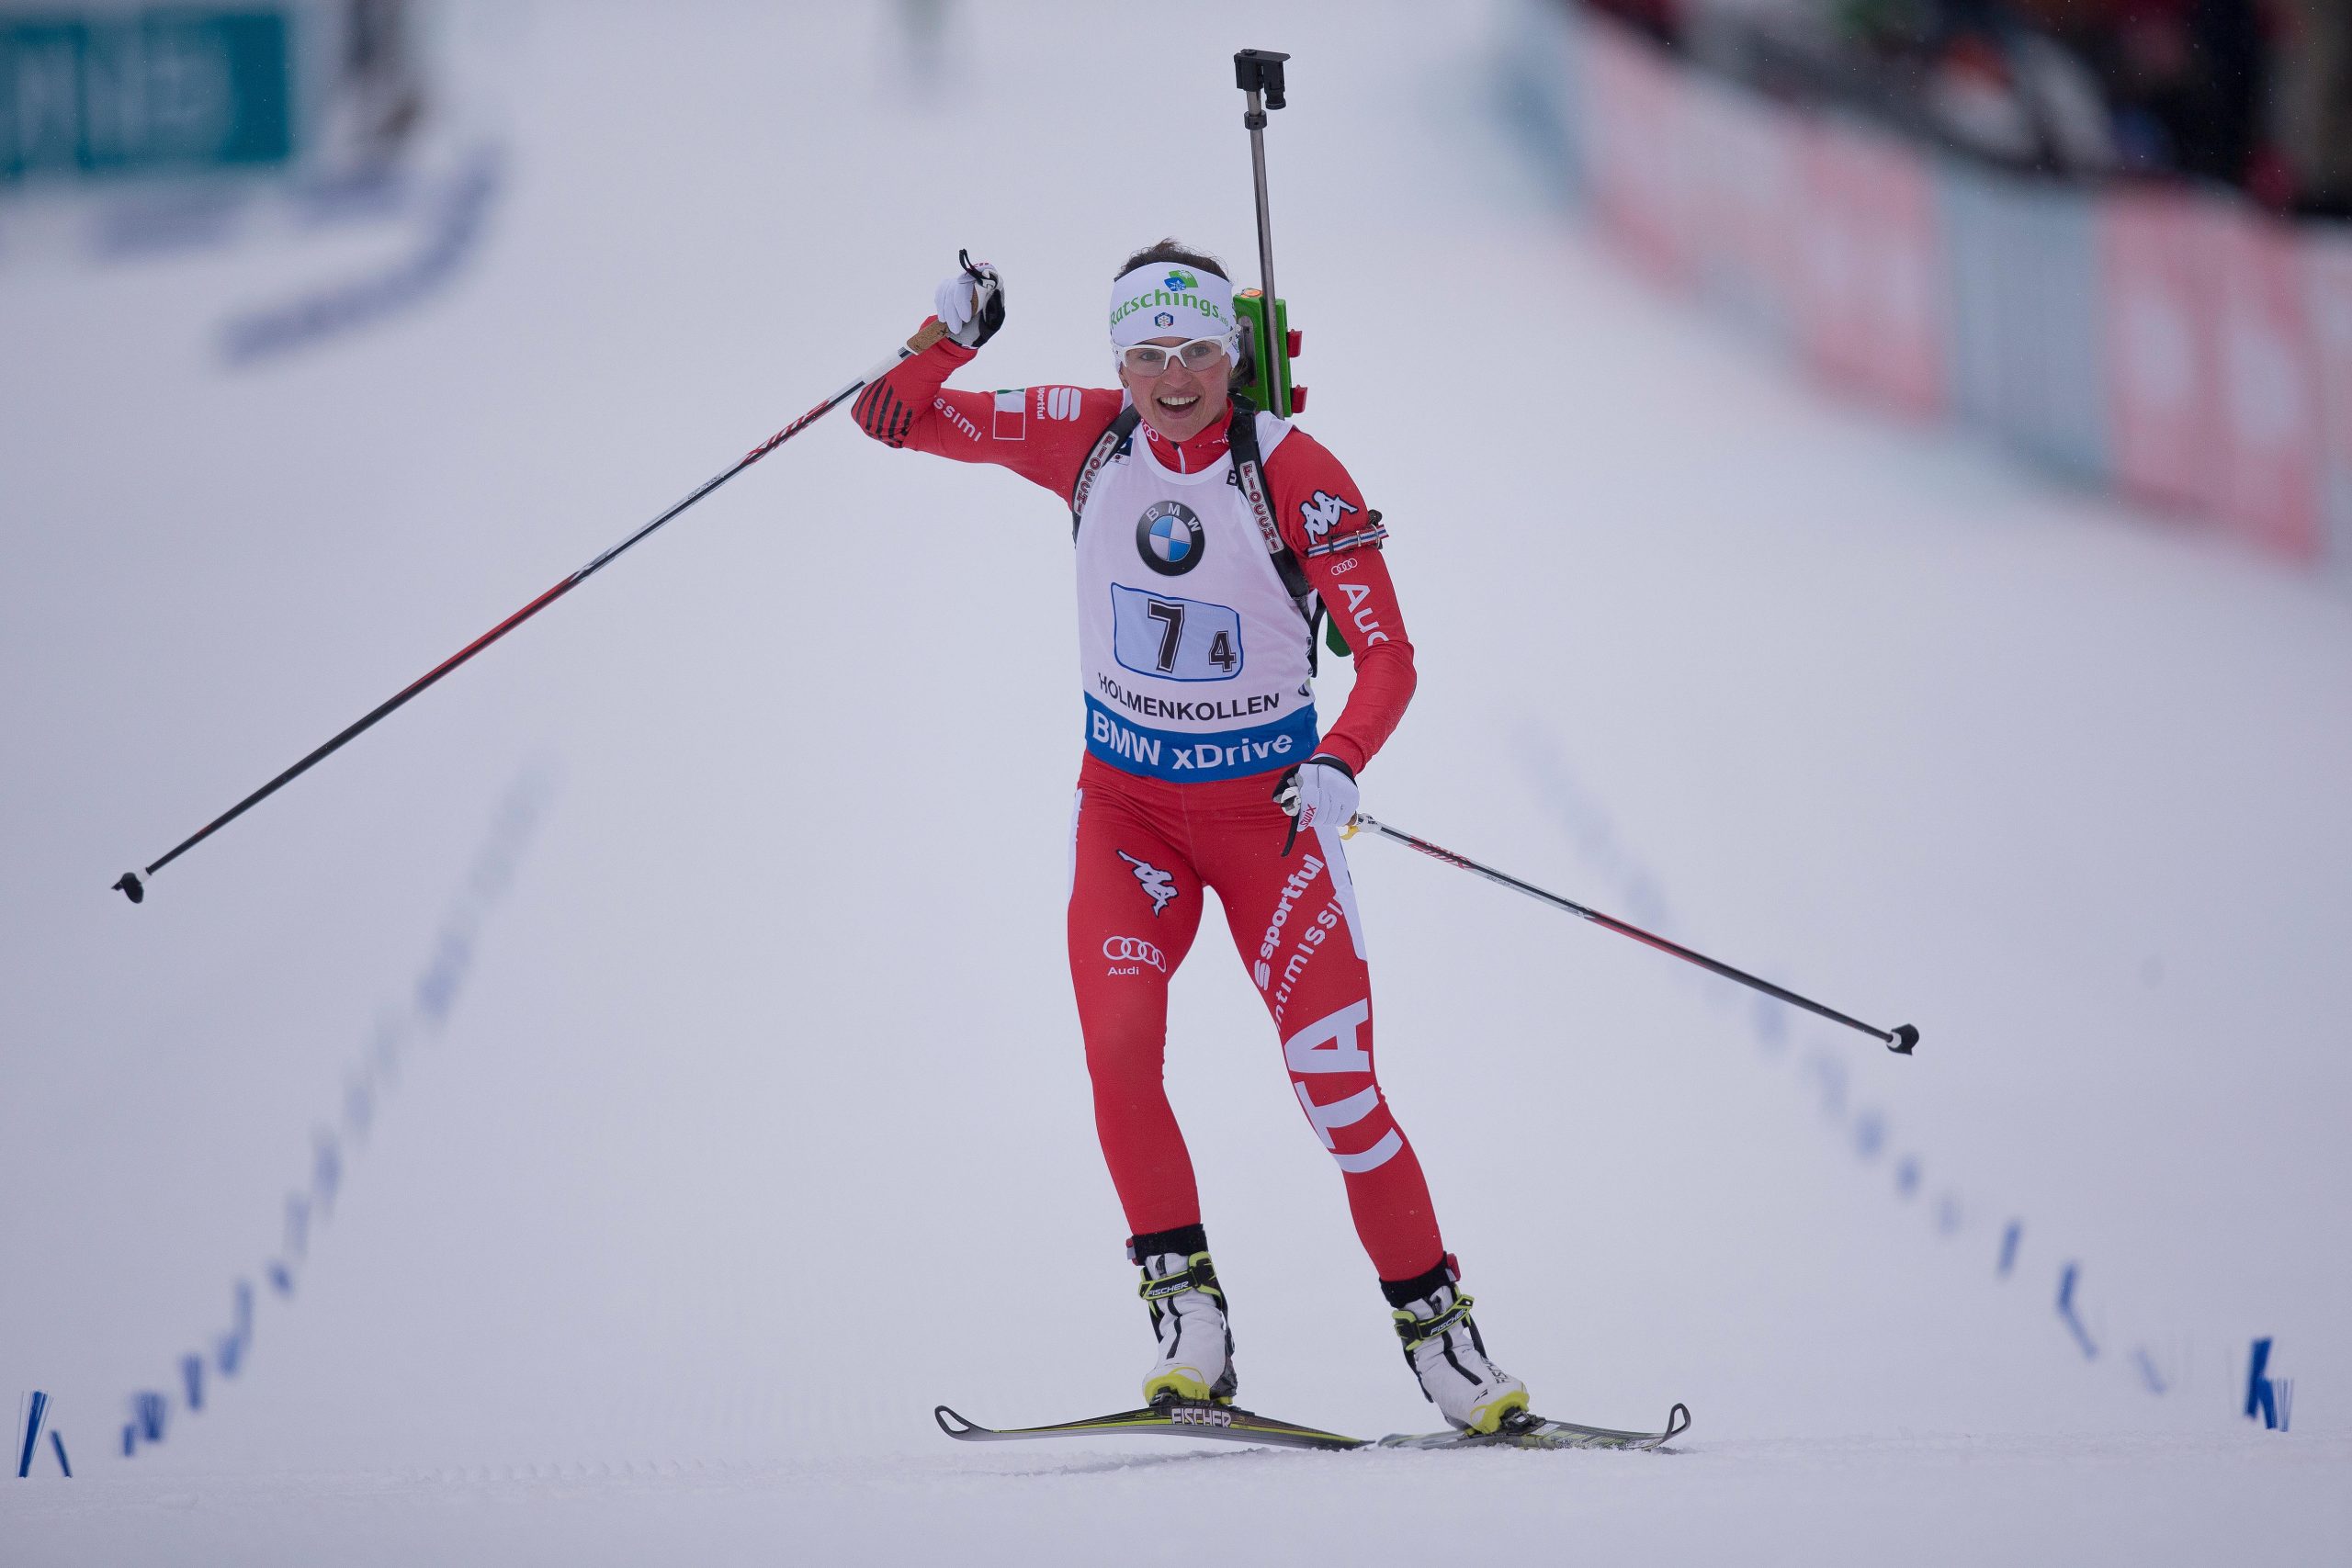 Una trionfante Oberhofer nella staffetta di Biathlon ad Oslo (NOR). (Photo: NordicFocus)